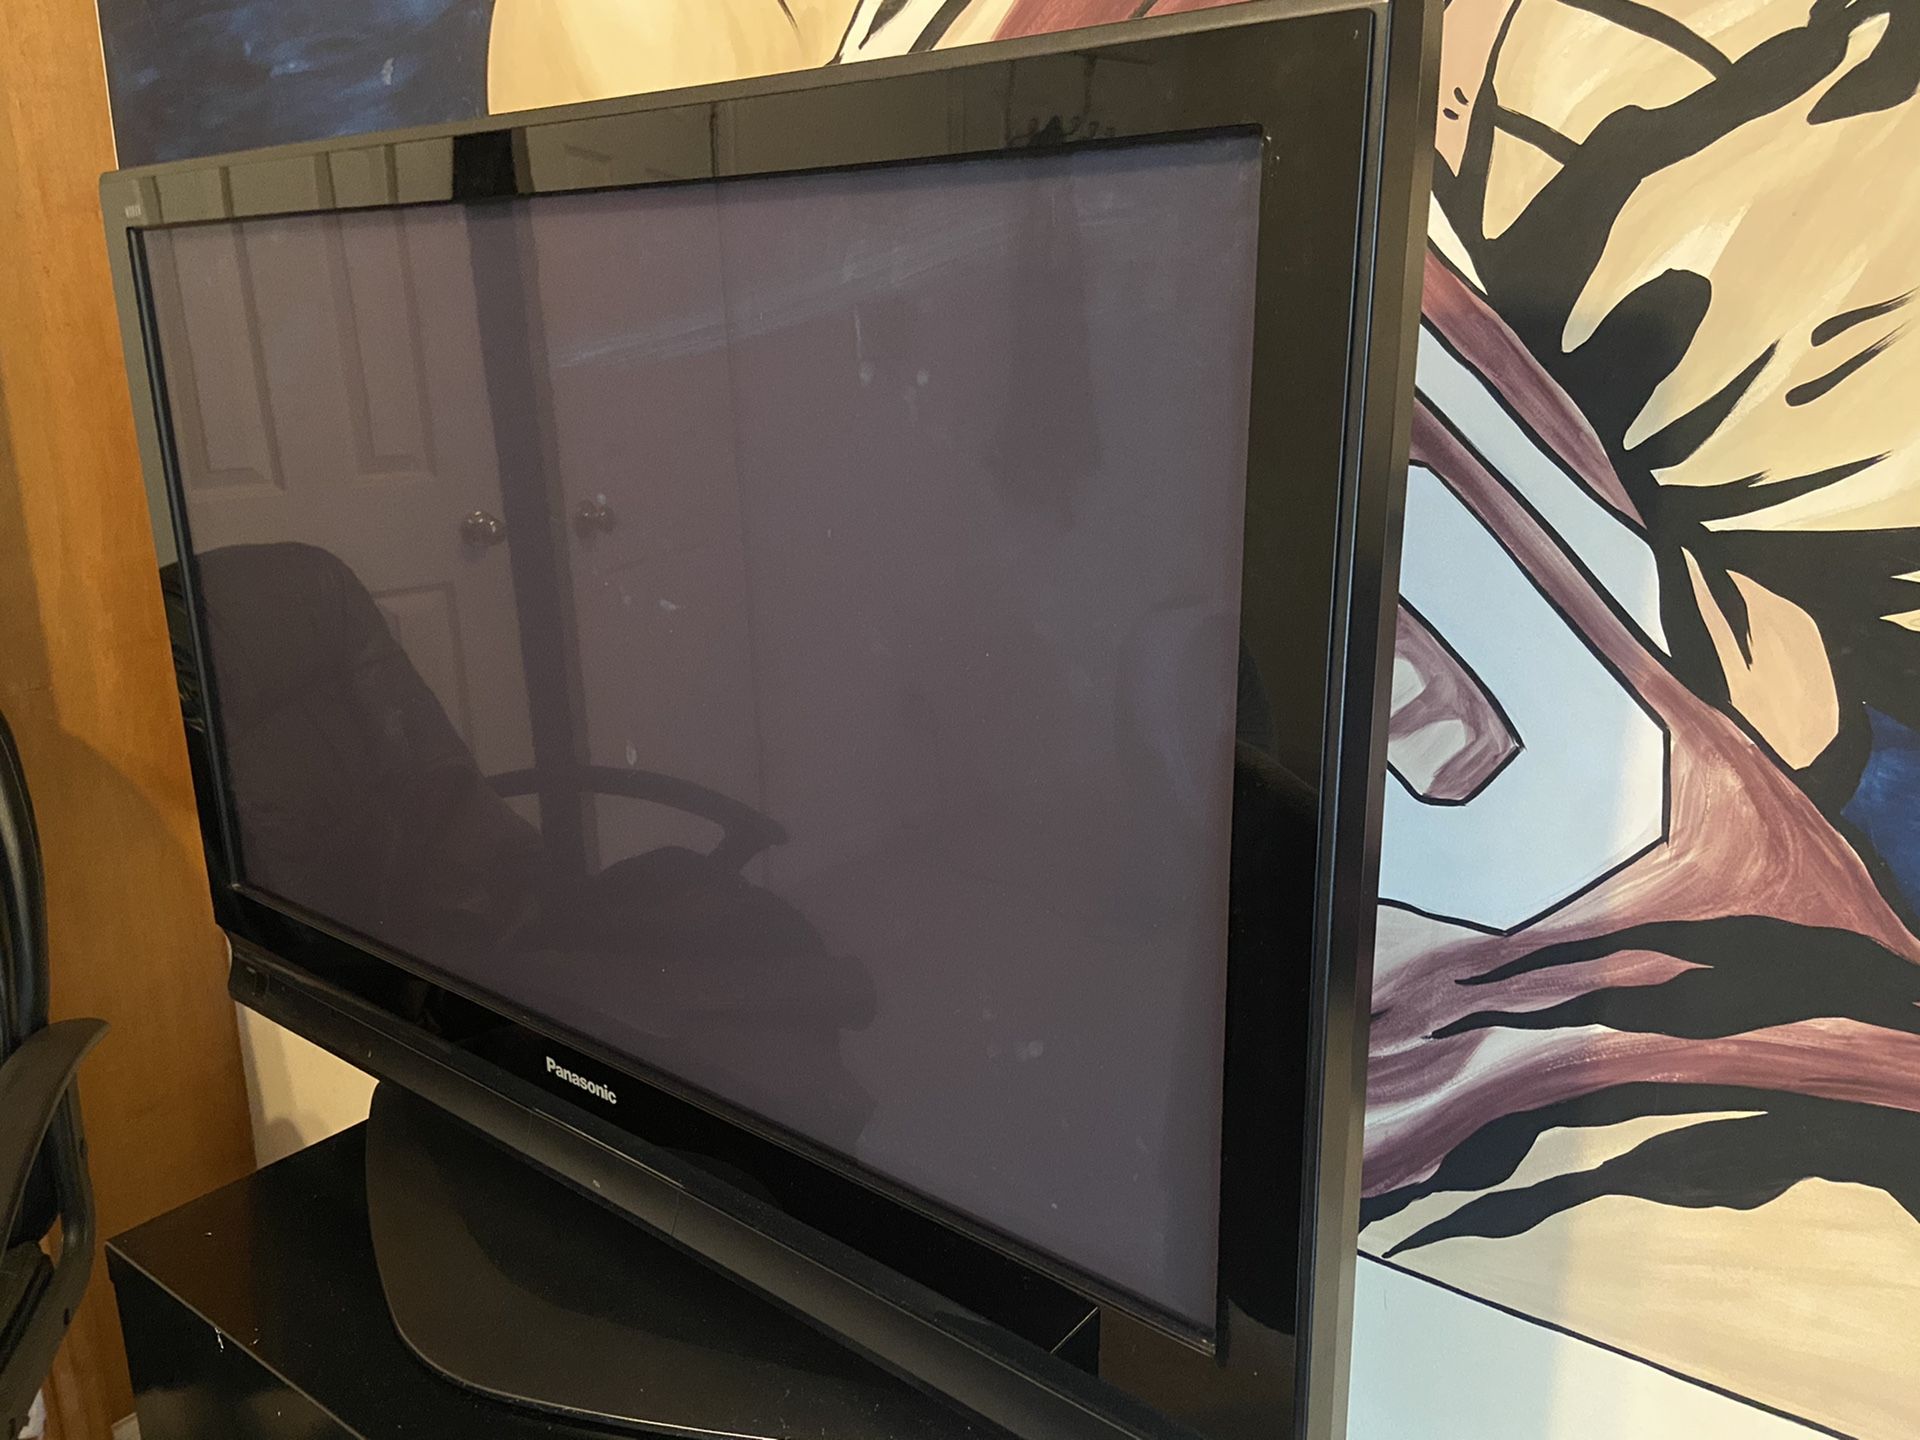 45” Panasonic flat screen tv